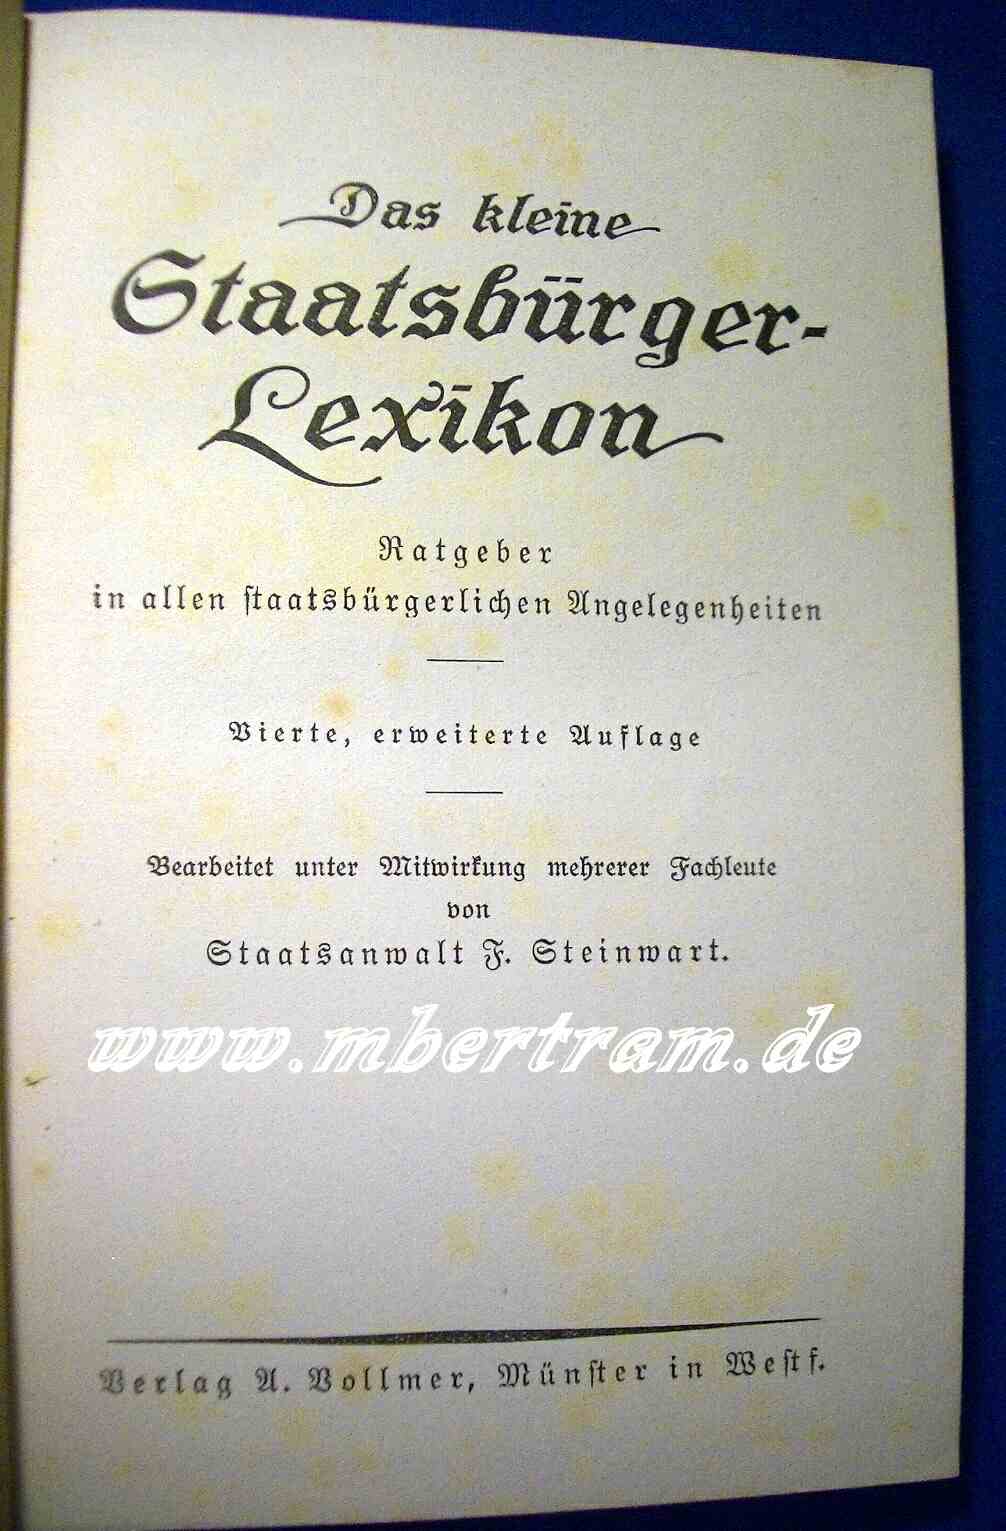 Das kleine Staatsbürger Lexikon, Vollmer, Münster, 1927